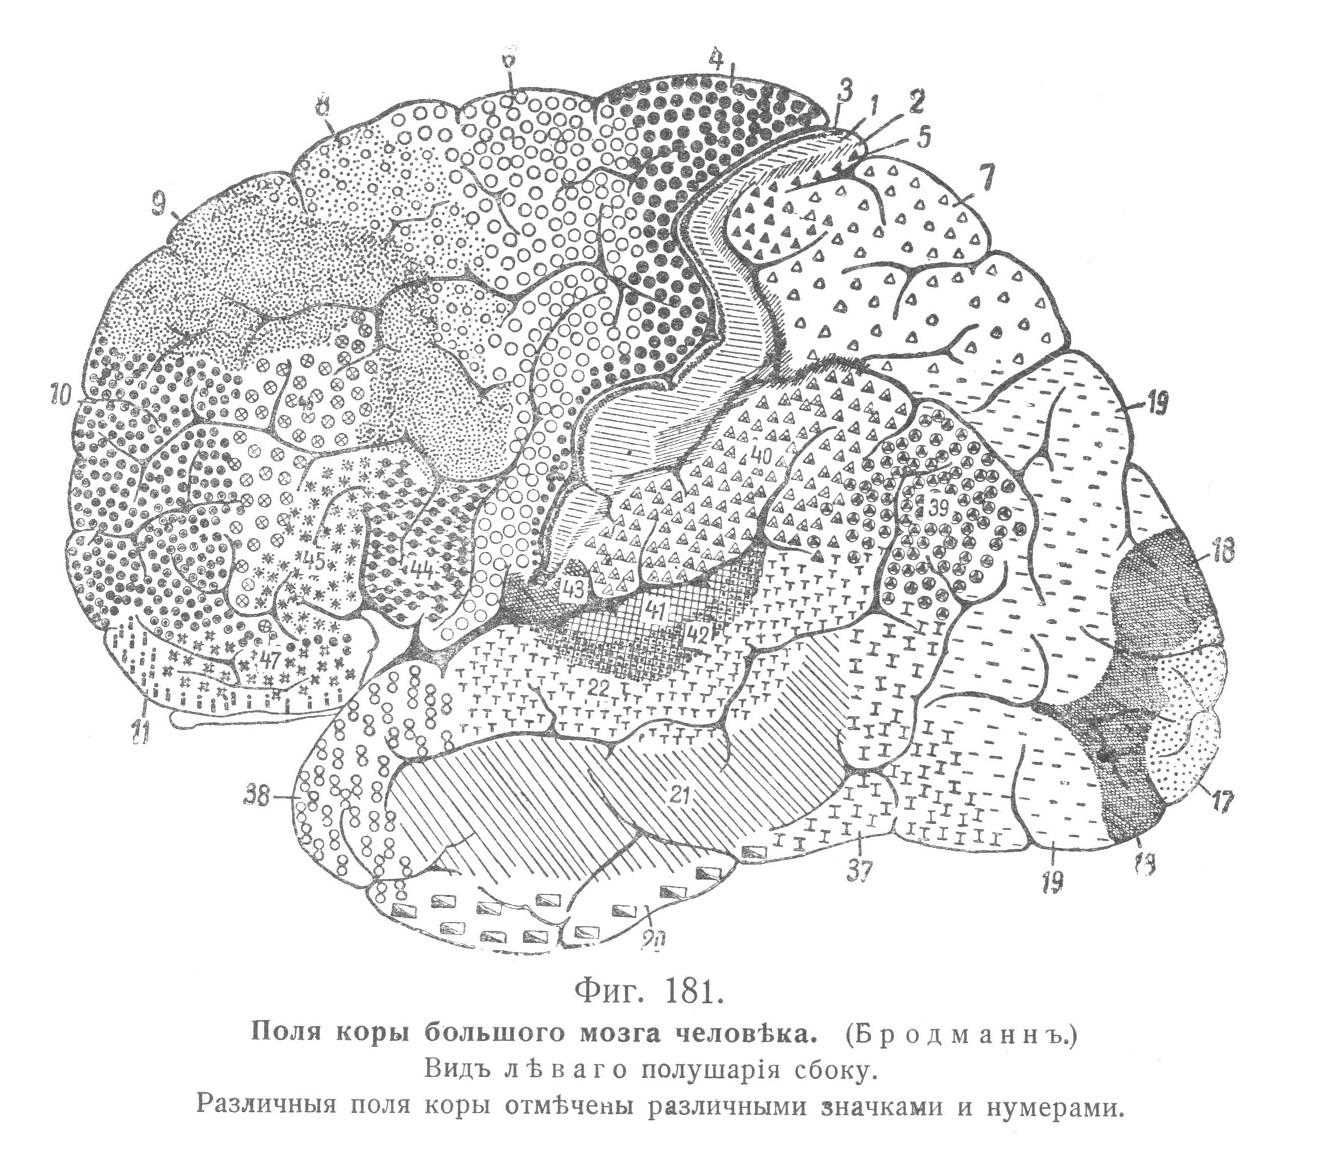 Мѣстныя различія въ строеніи коры большого мозга